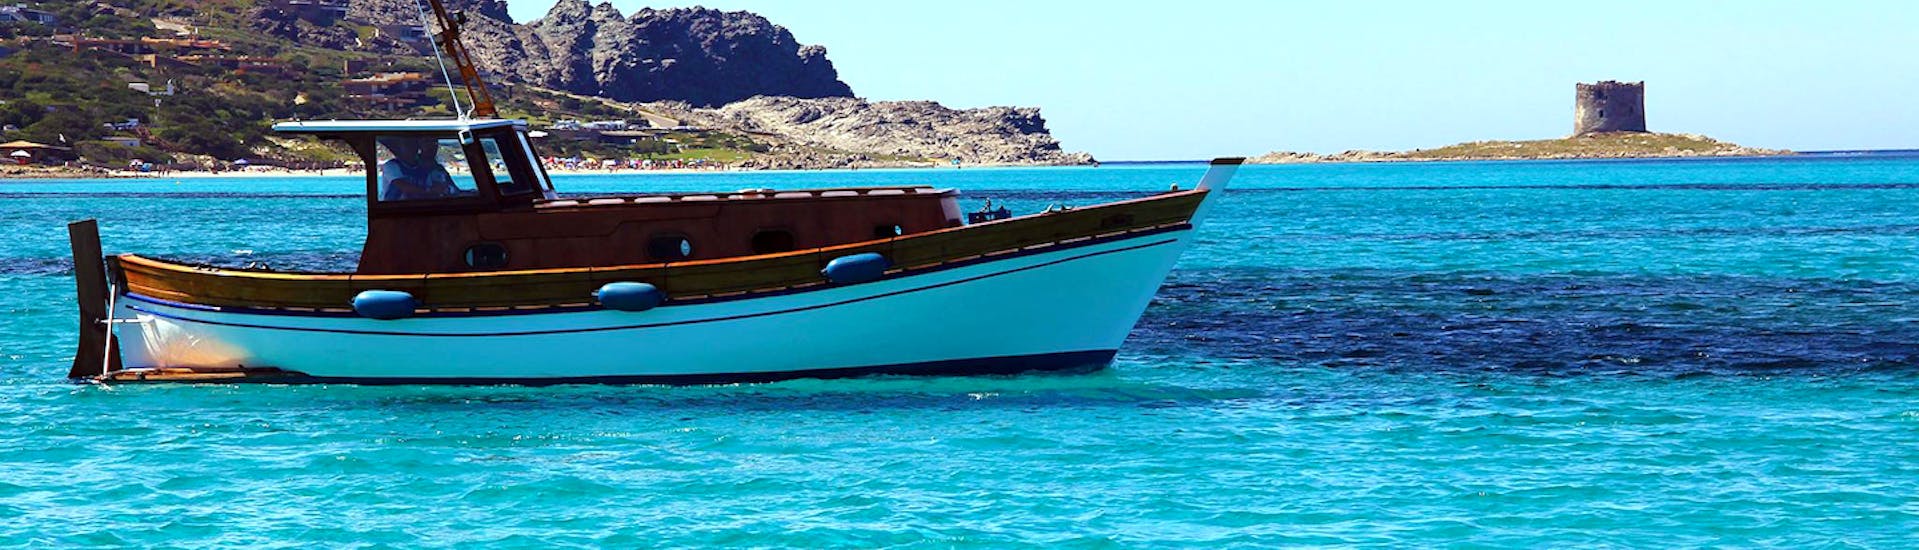 Das Boot von Onda Blu Asinara, das für die Bootstour von Stintino zum Asinara-Nationalpark mit Mittagessen benutzt wird, schippert über das Meer.